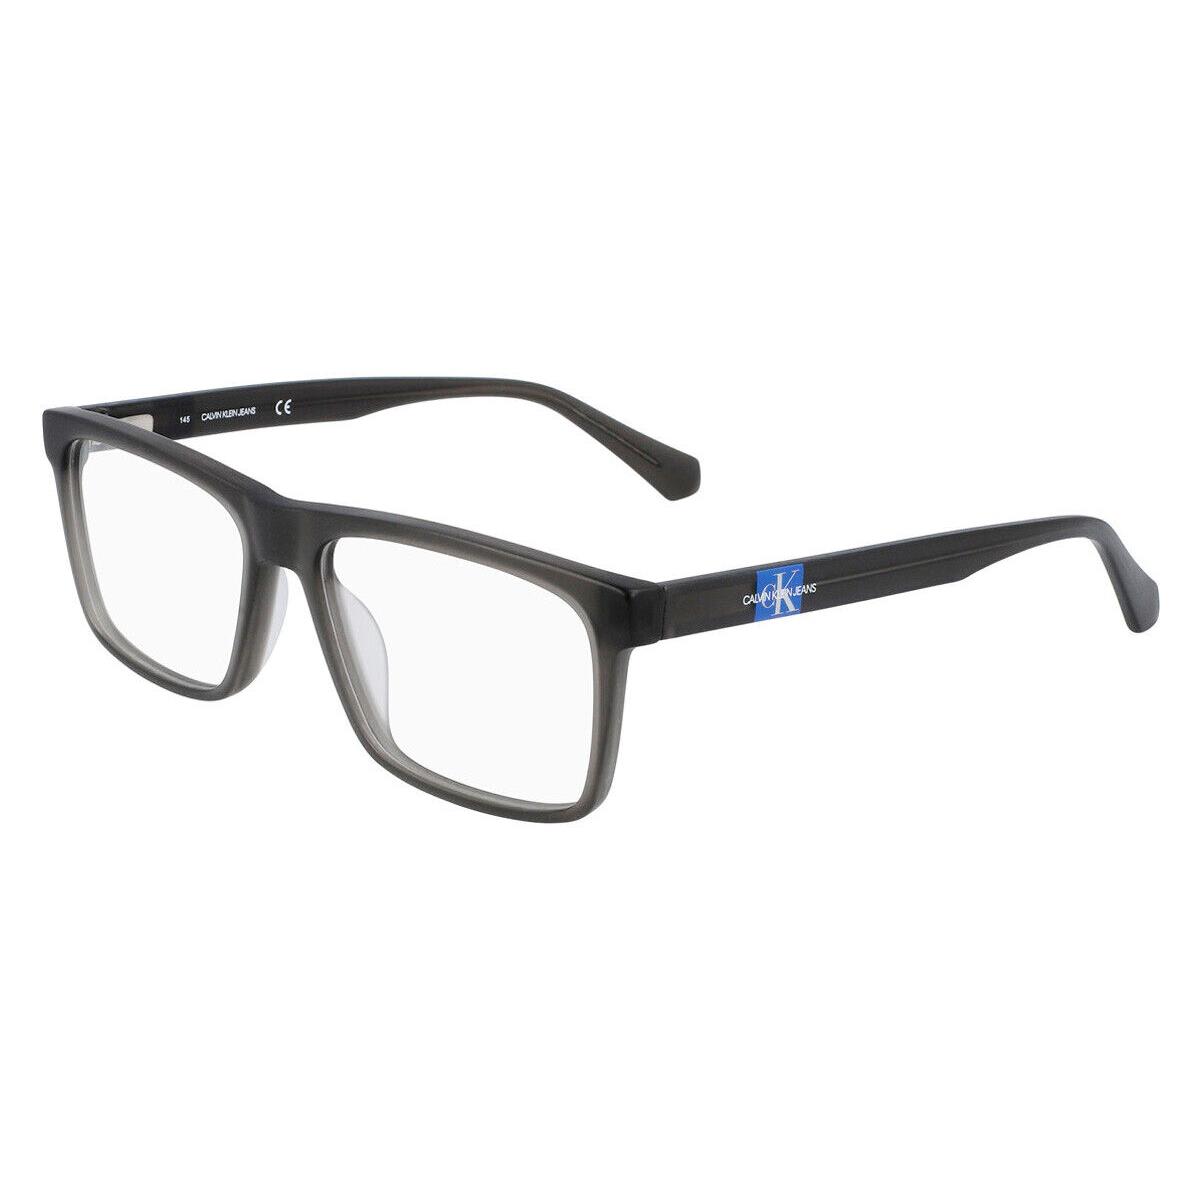 Calvin Klein CKJ21614 Eyeglasses Men Light Gray Square 55mm - Frame: Light Gray, Lens: